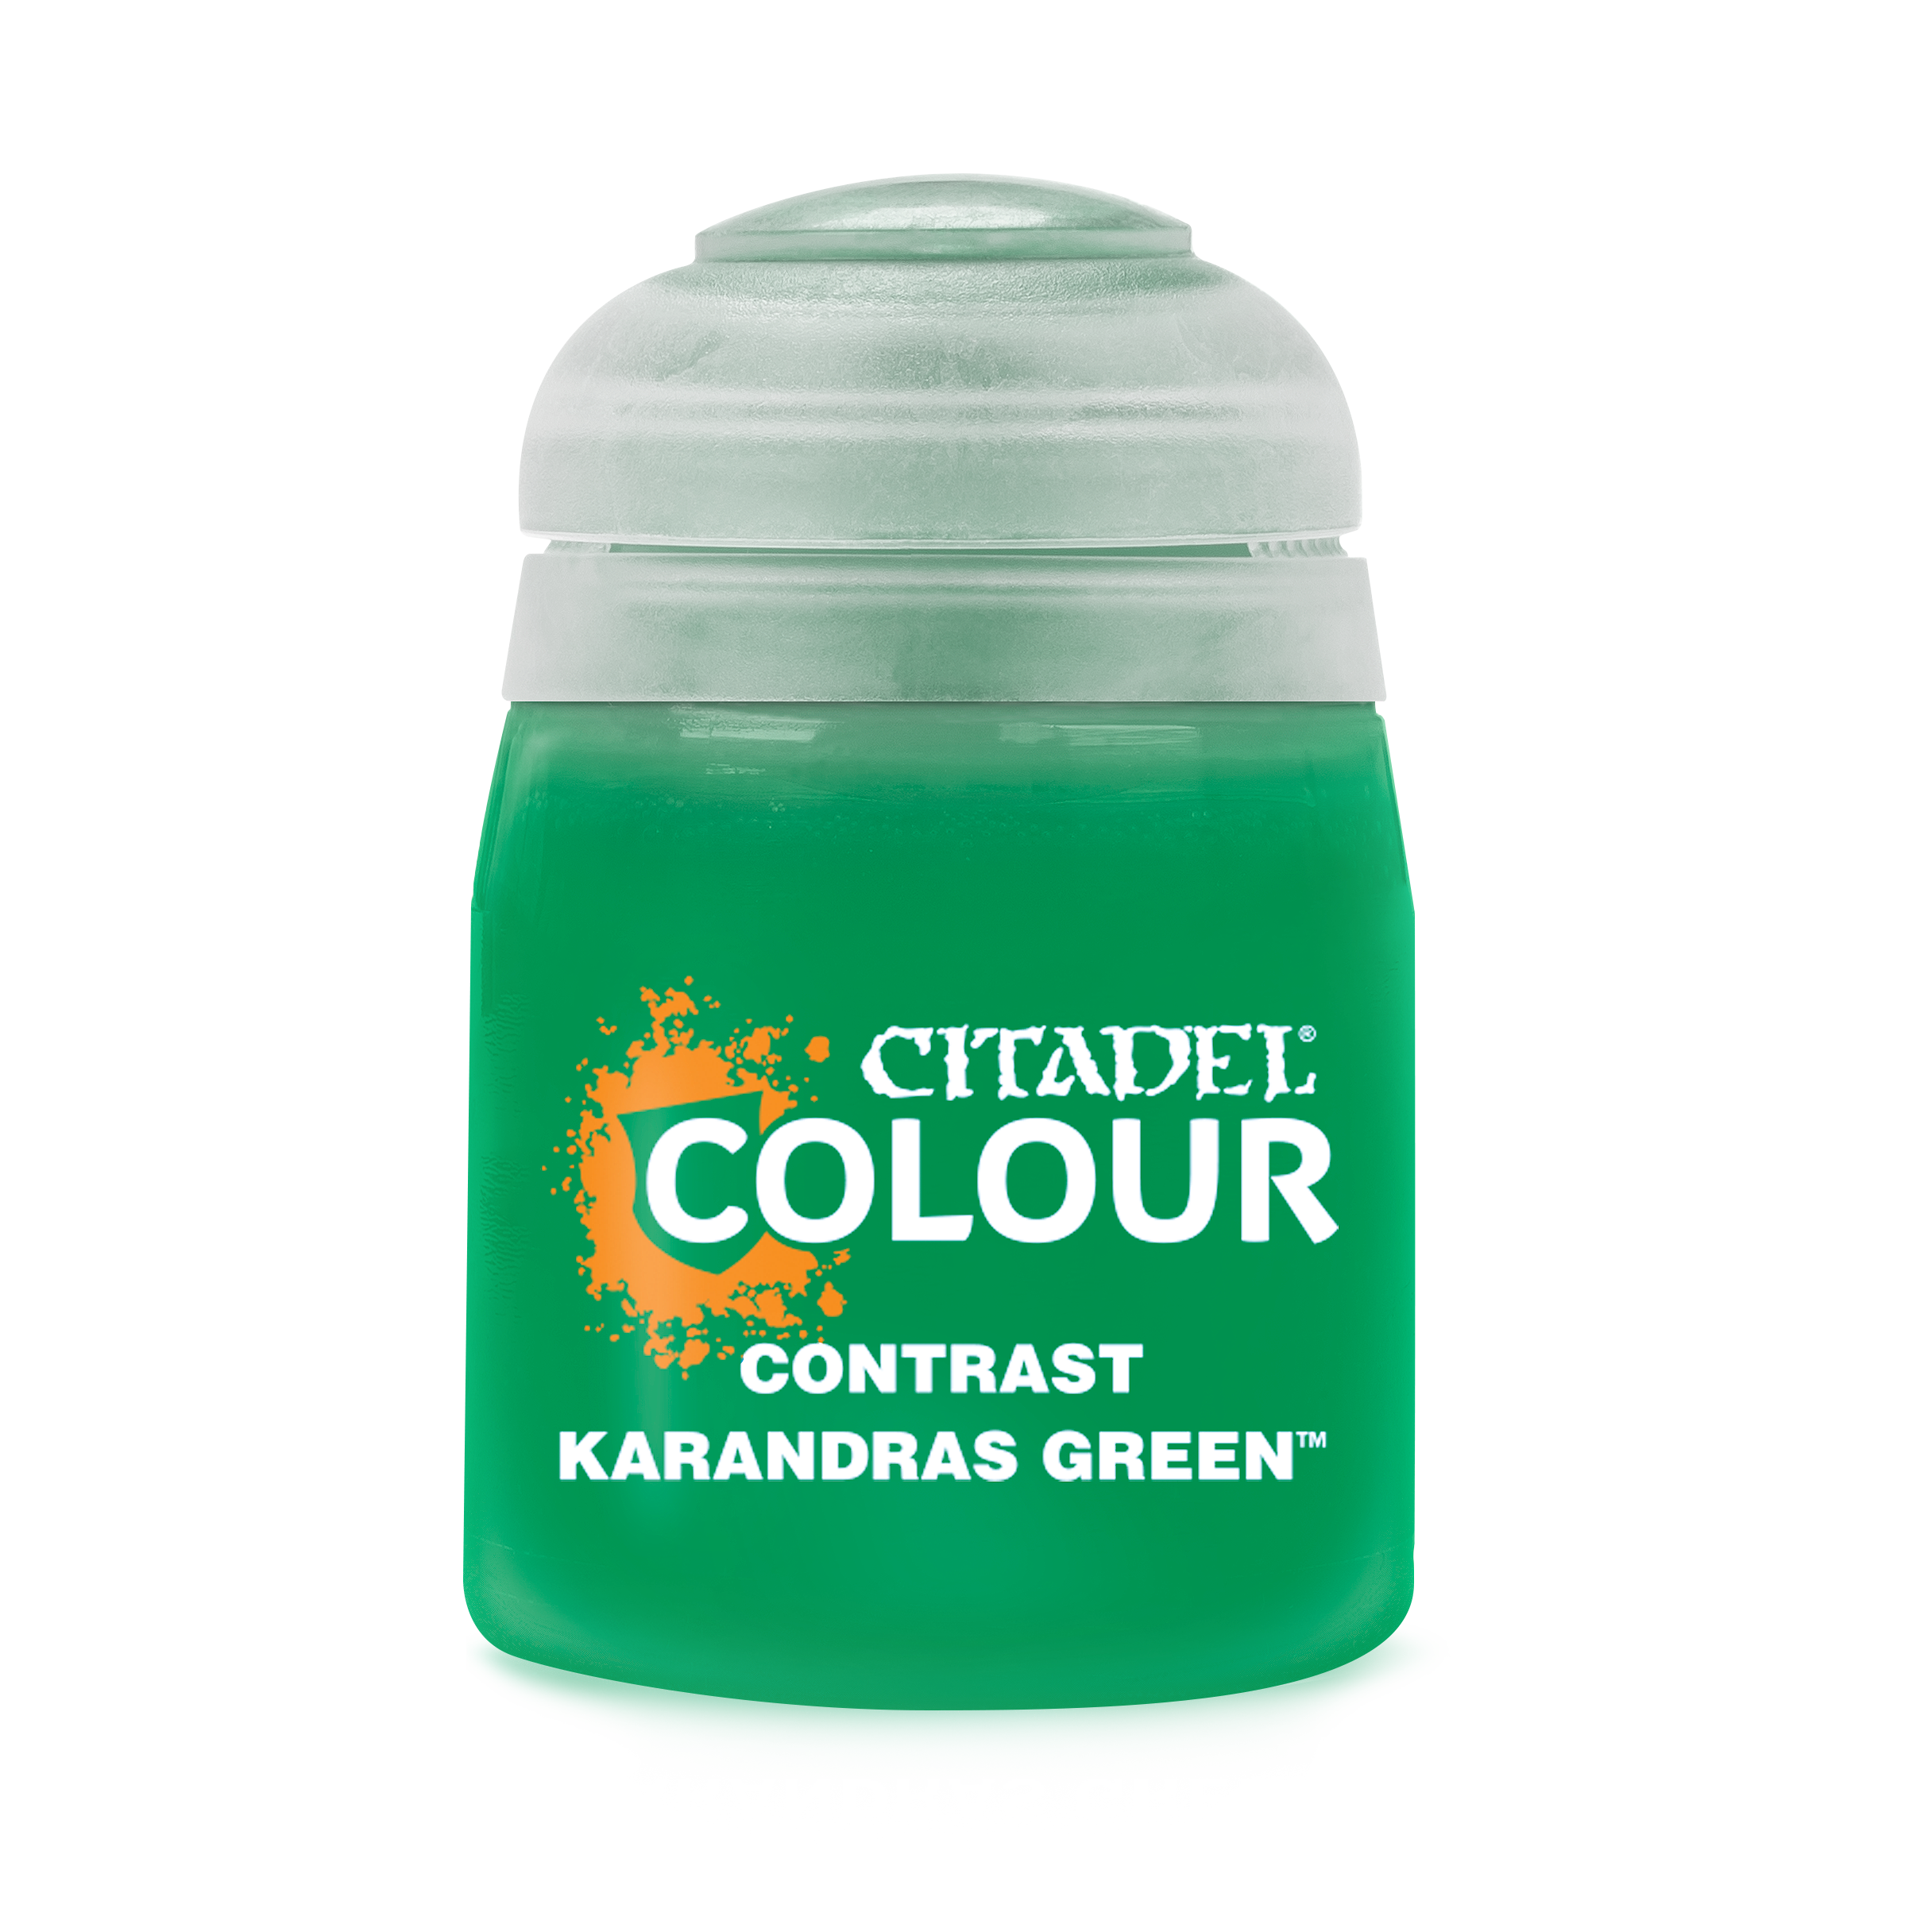 Contrast Karandras Green - Citadel Colour